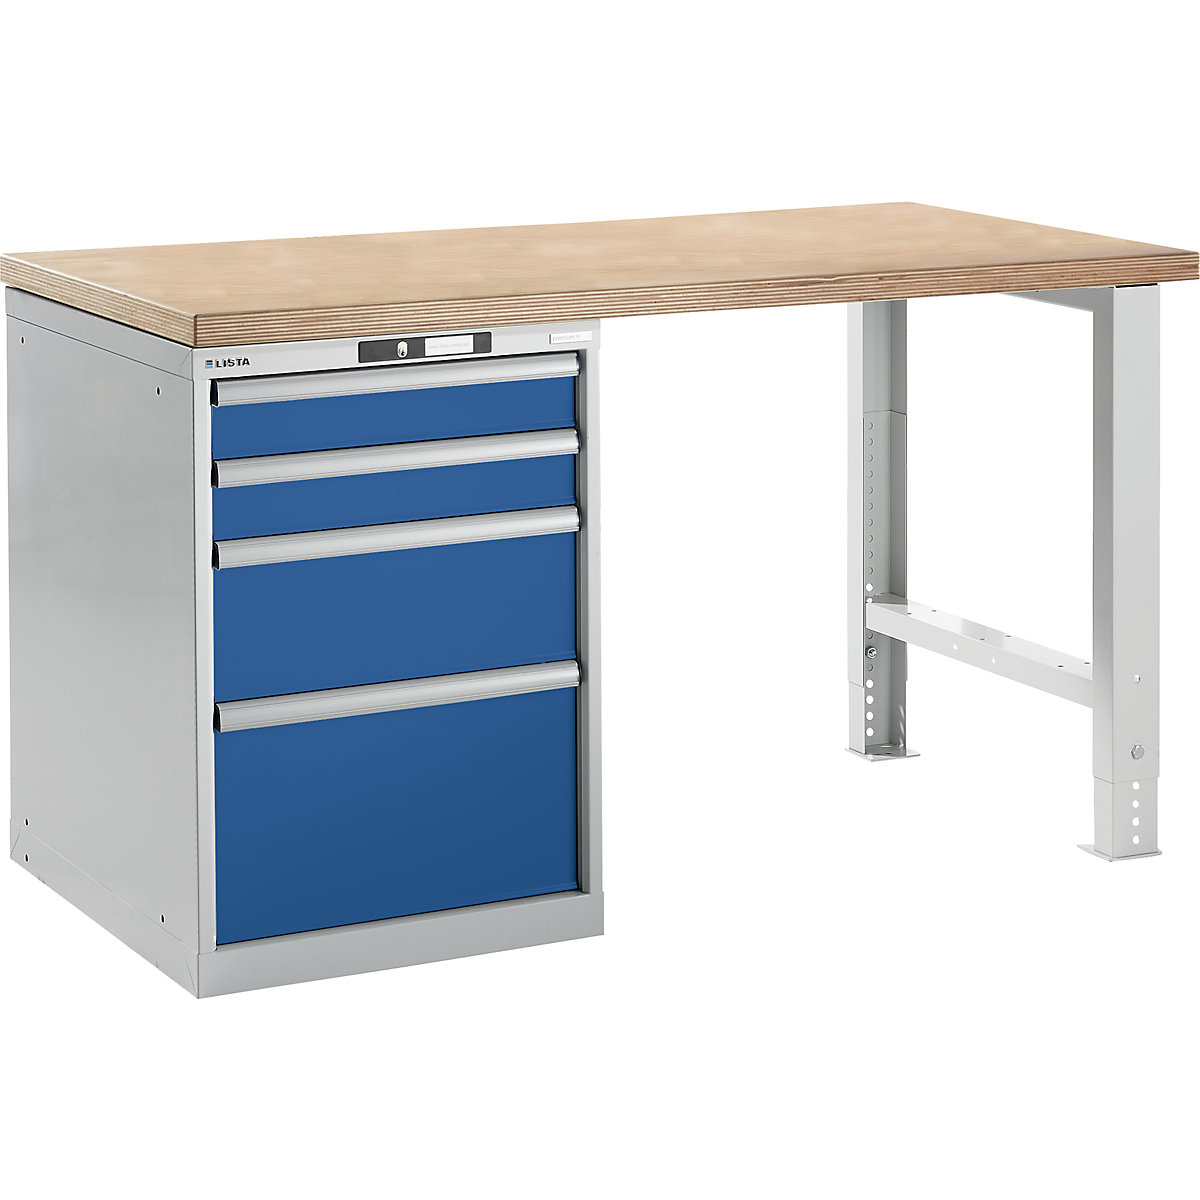 Dílenský stůl ve stavebnicovém systému – LISTA, výška 840 mm, podstavná skříňka, 4 zásuvky, hořcově modrá, šířka stolu 1500 mm-14